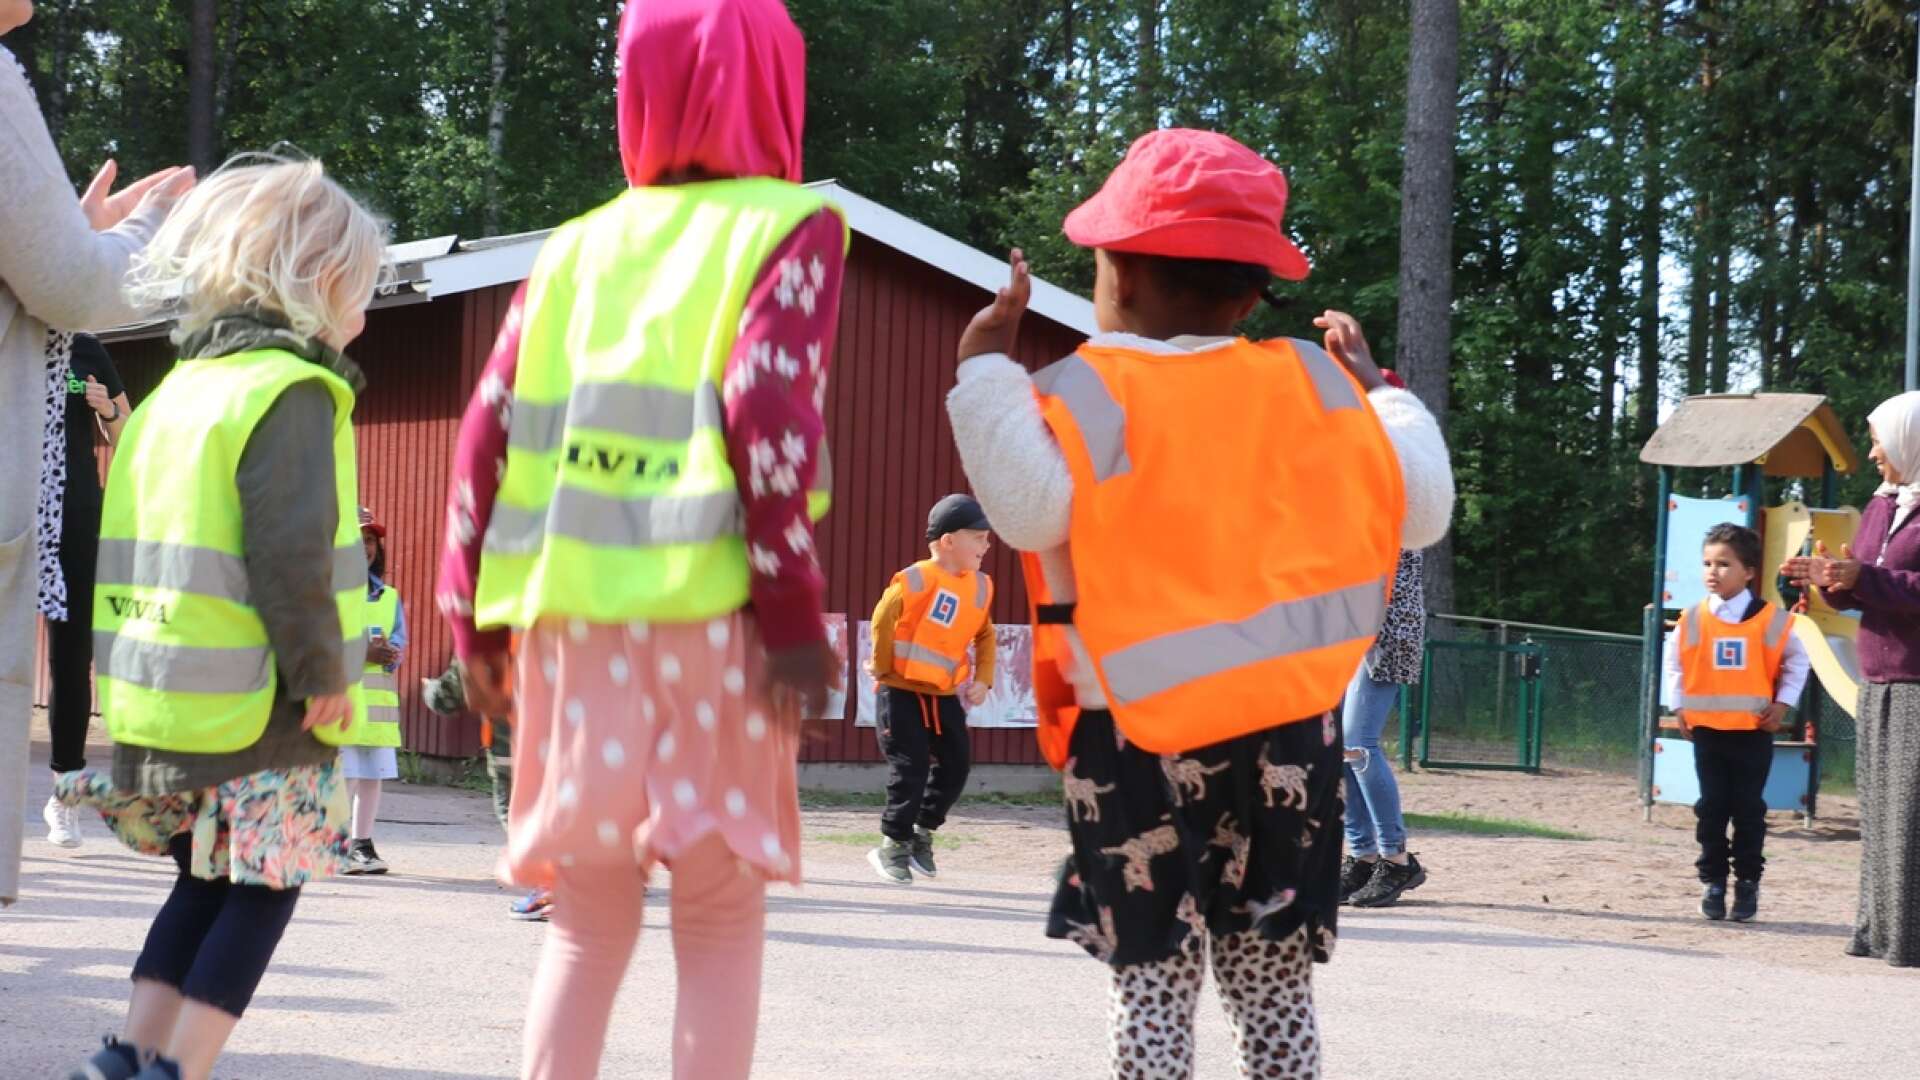 Två förskolebarn blev kontaktade av en främmande kvinna i Karlstad förra veckan. När barnen inte gjorde som hon ville började hon filma dem med sin mobilkamera. (Bilden tagen i ett annat sammanhang)